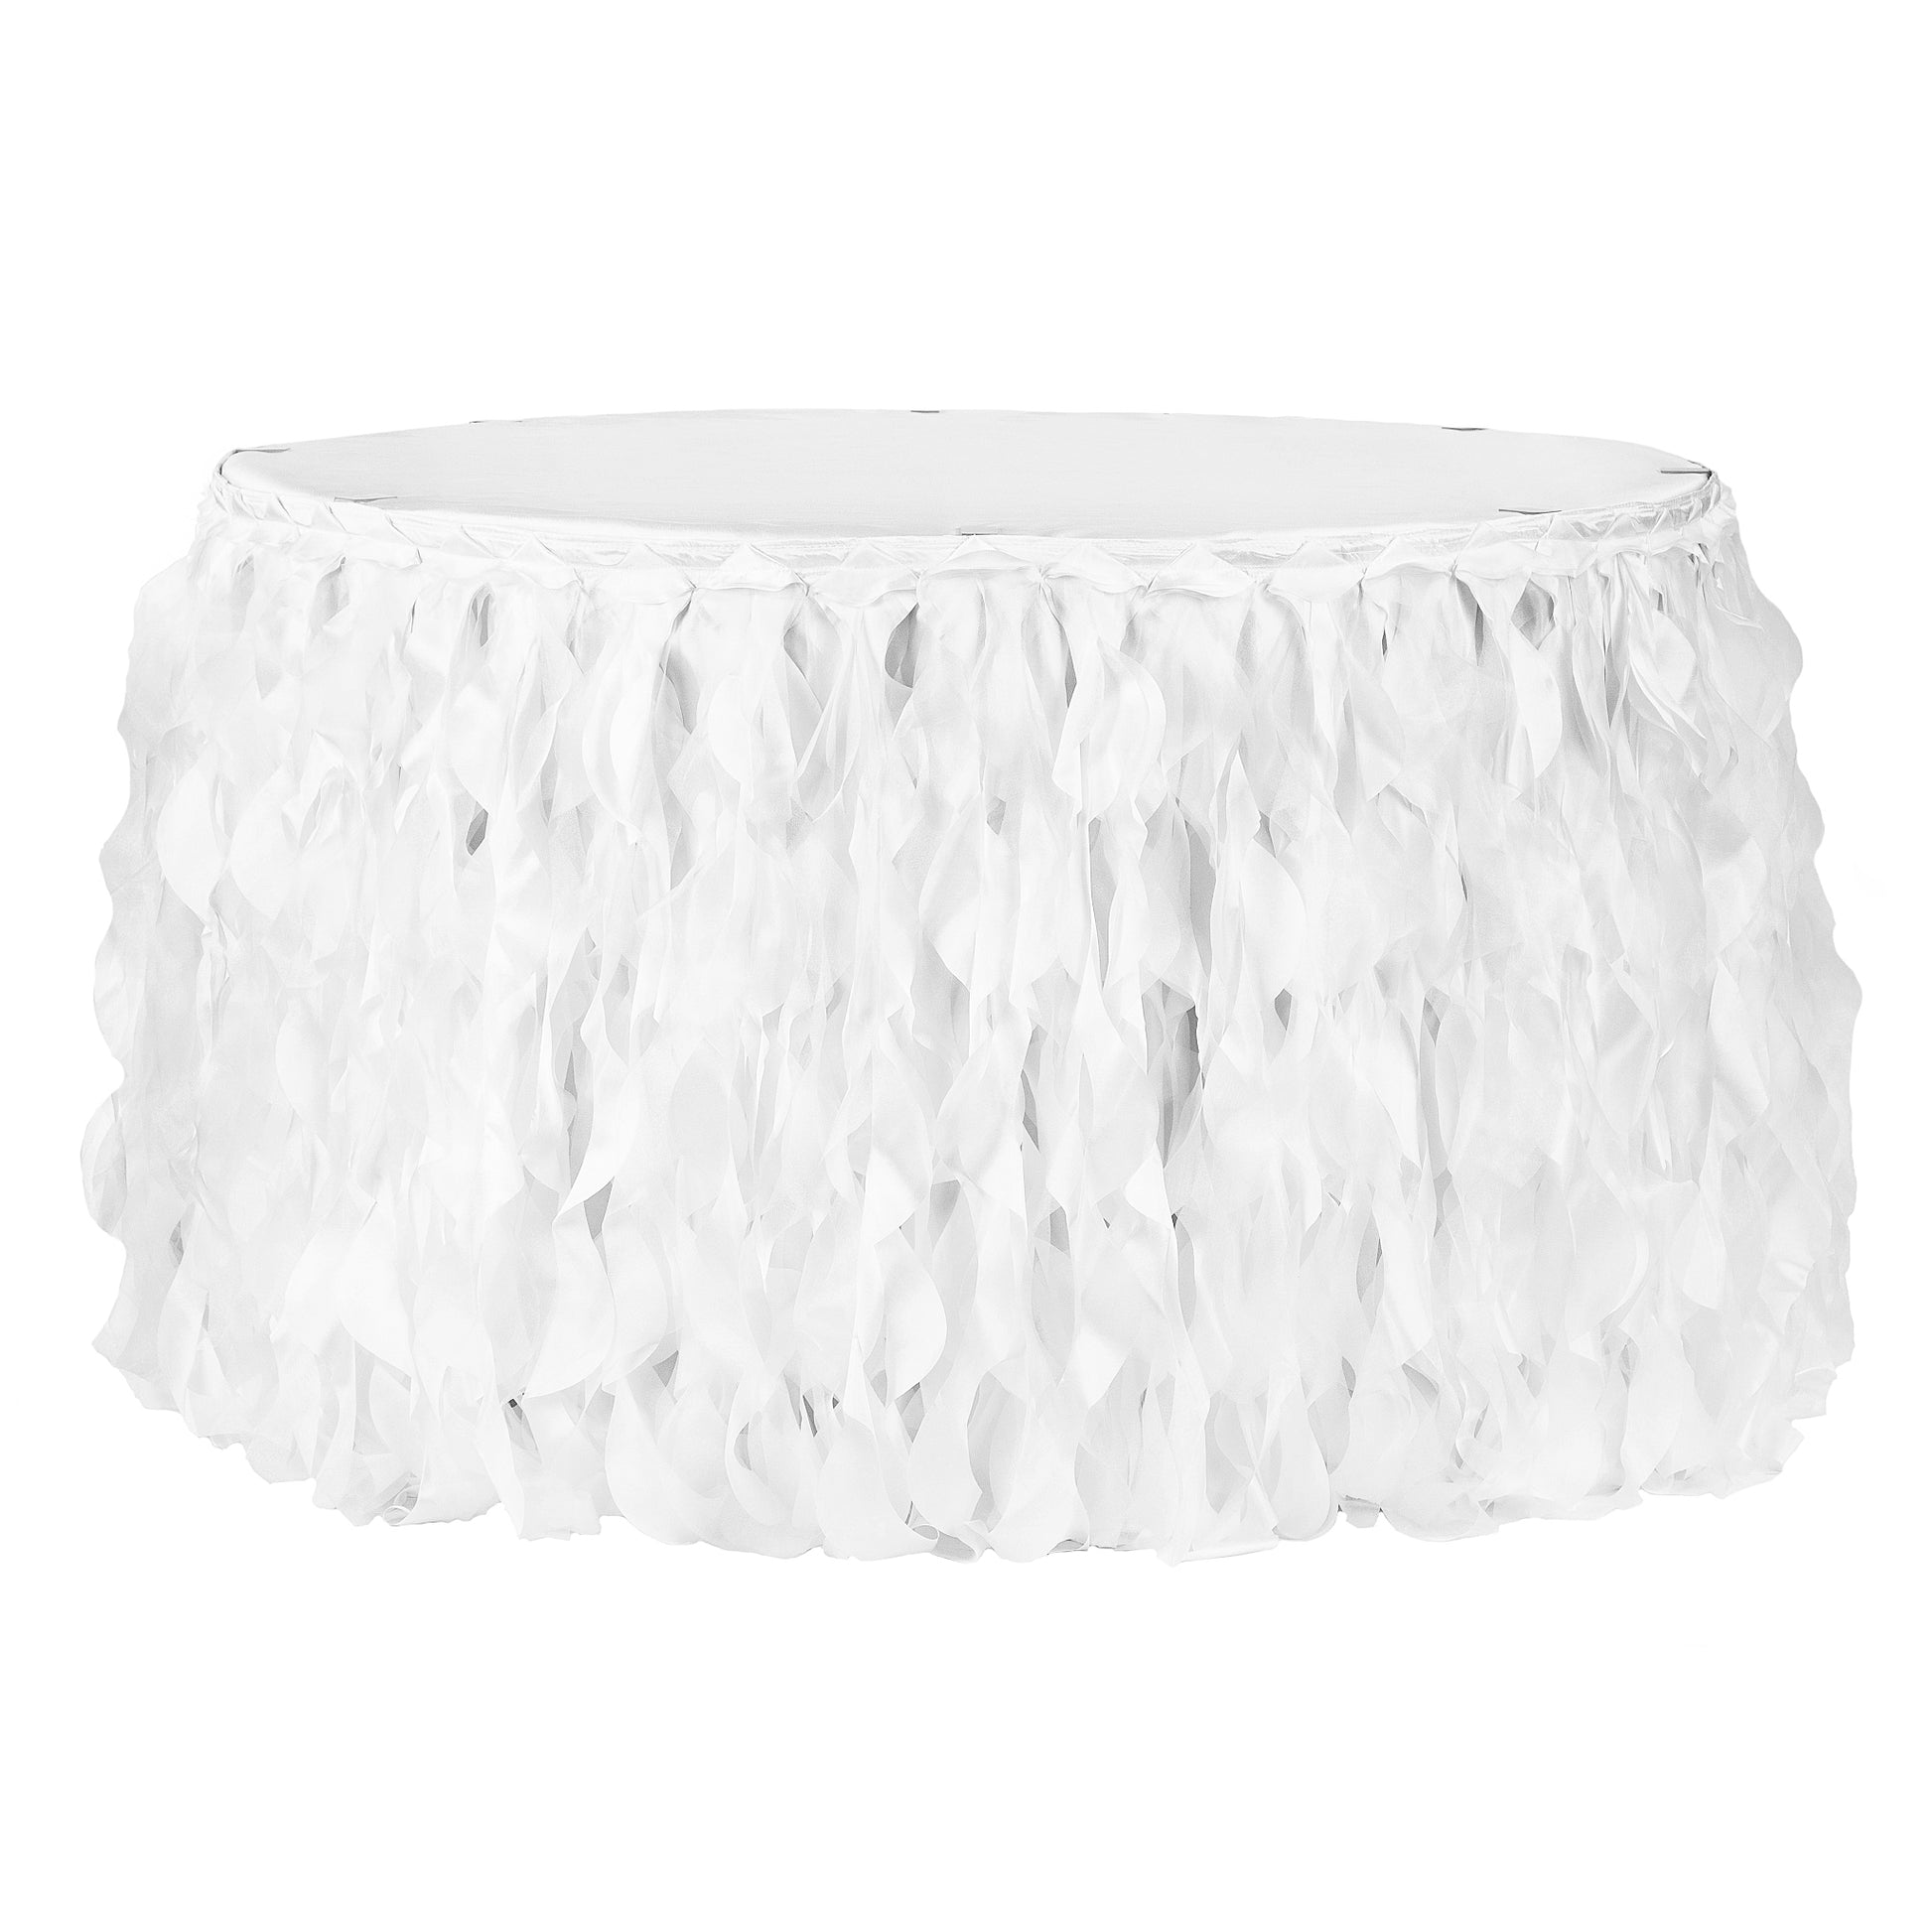 Curly Willow 14ft Table Skirt - White - CV Linens